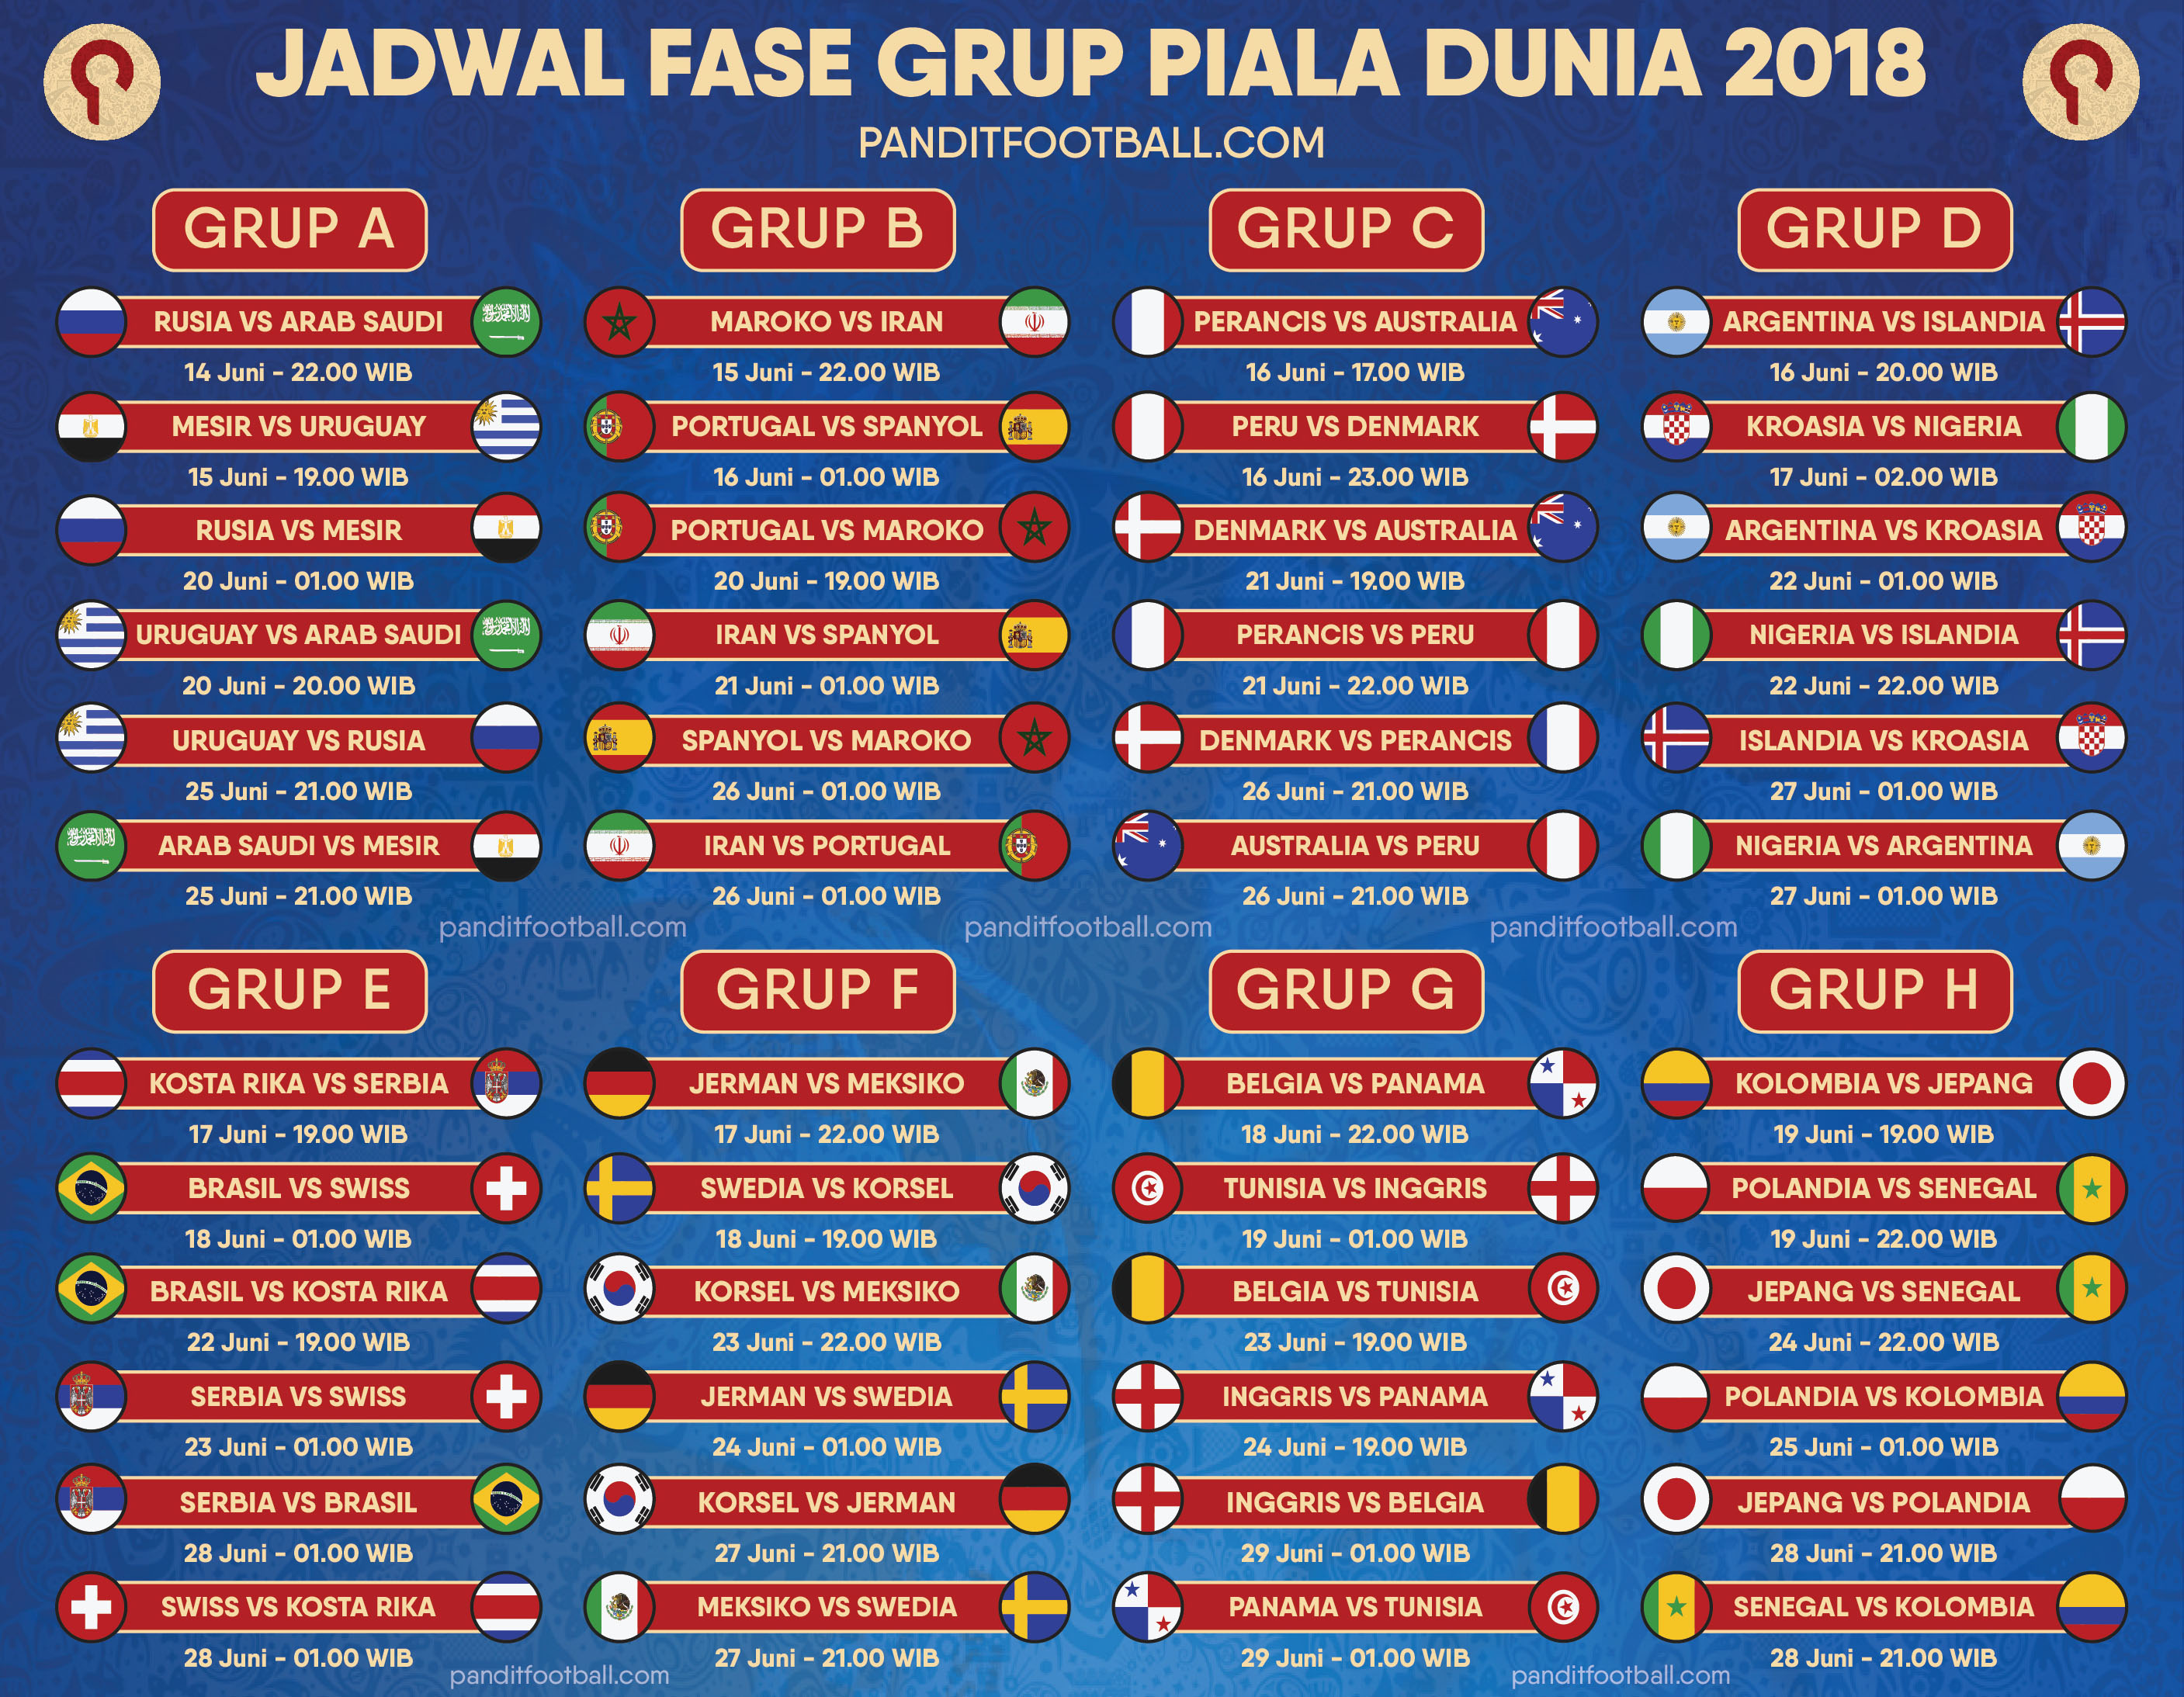 And Jadwal Pertandingan Piala Dunia 2018